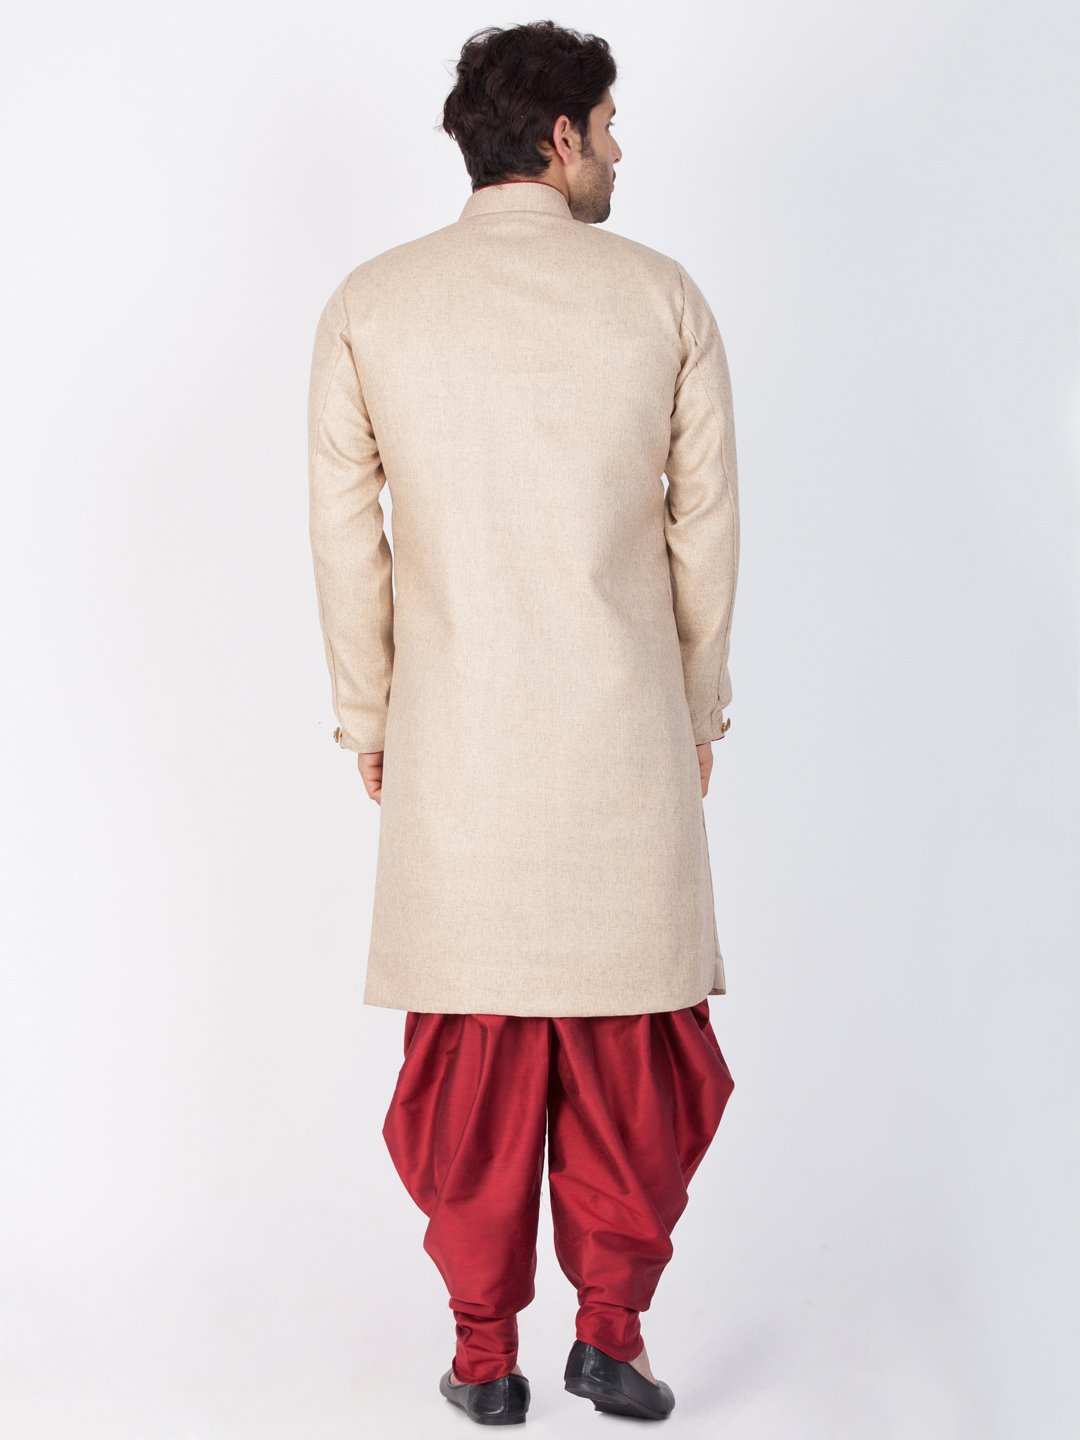 Men's Brown Cotton Blend Sherwani Set